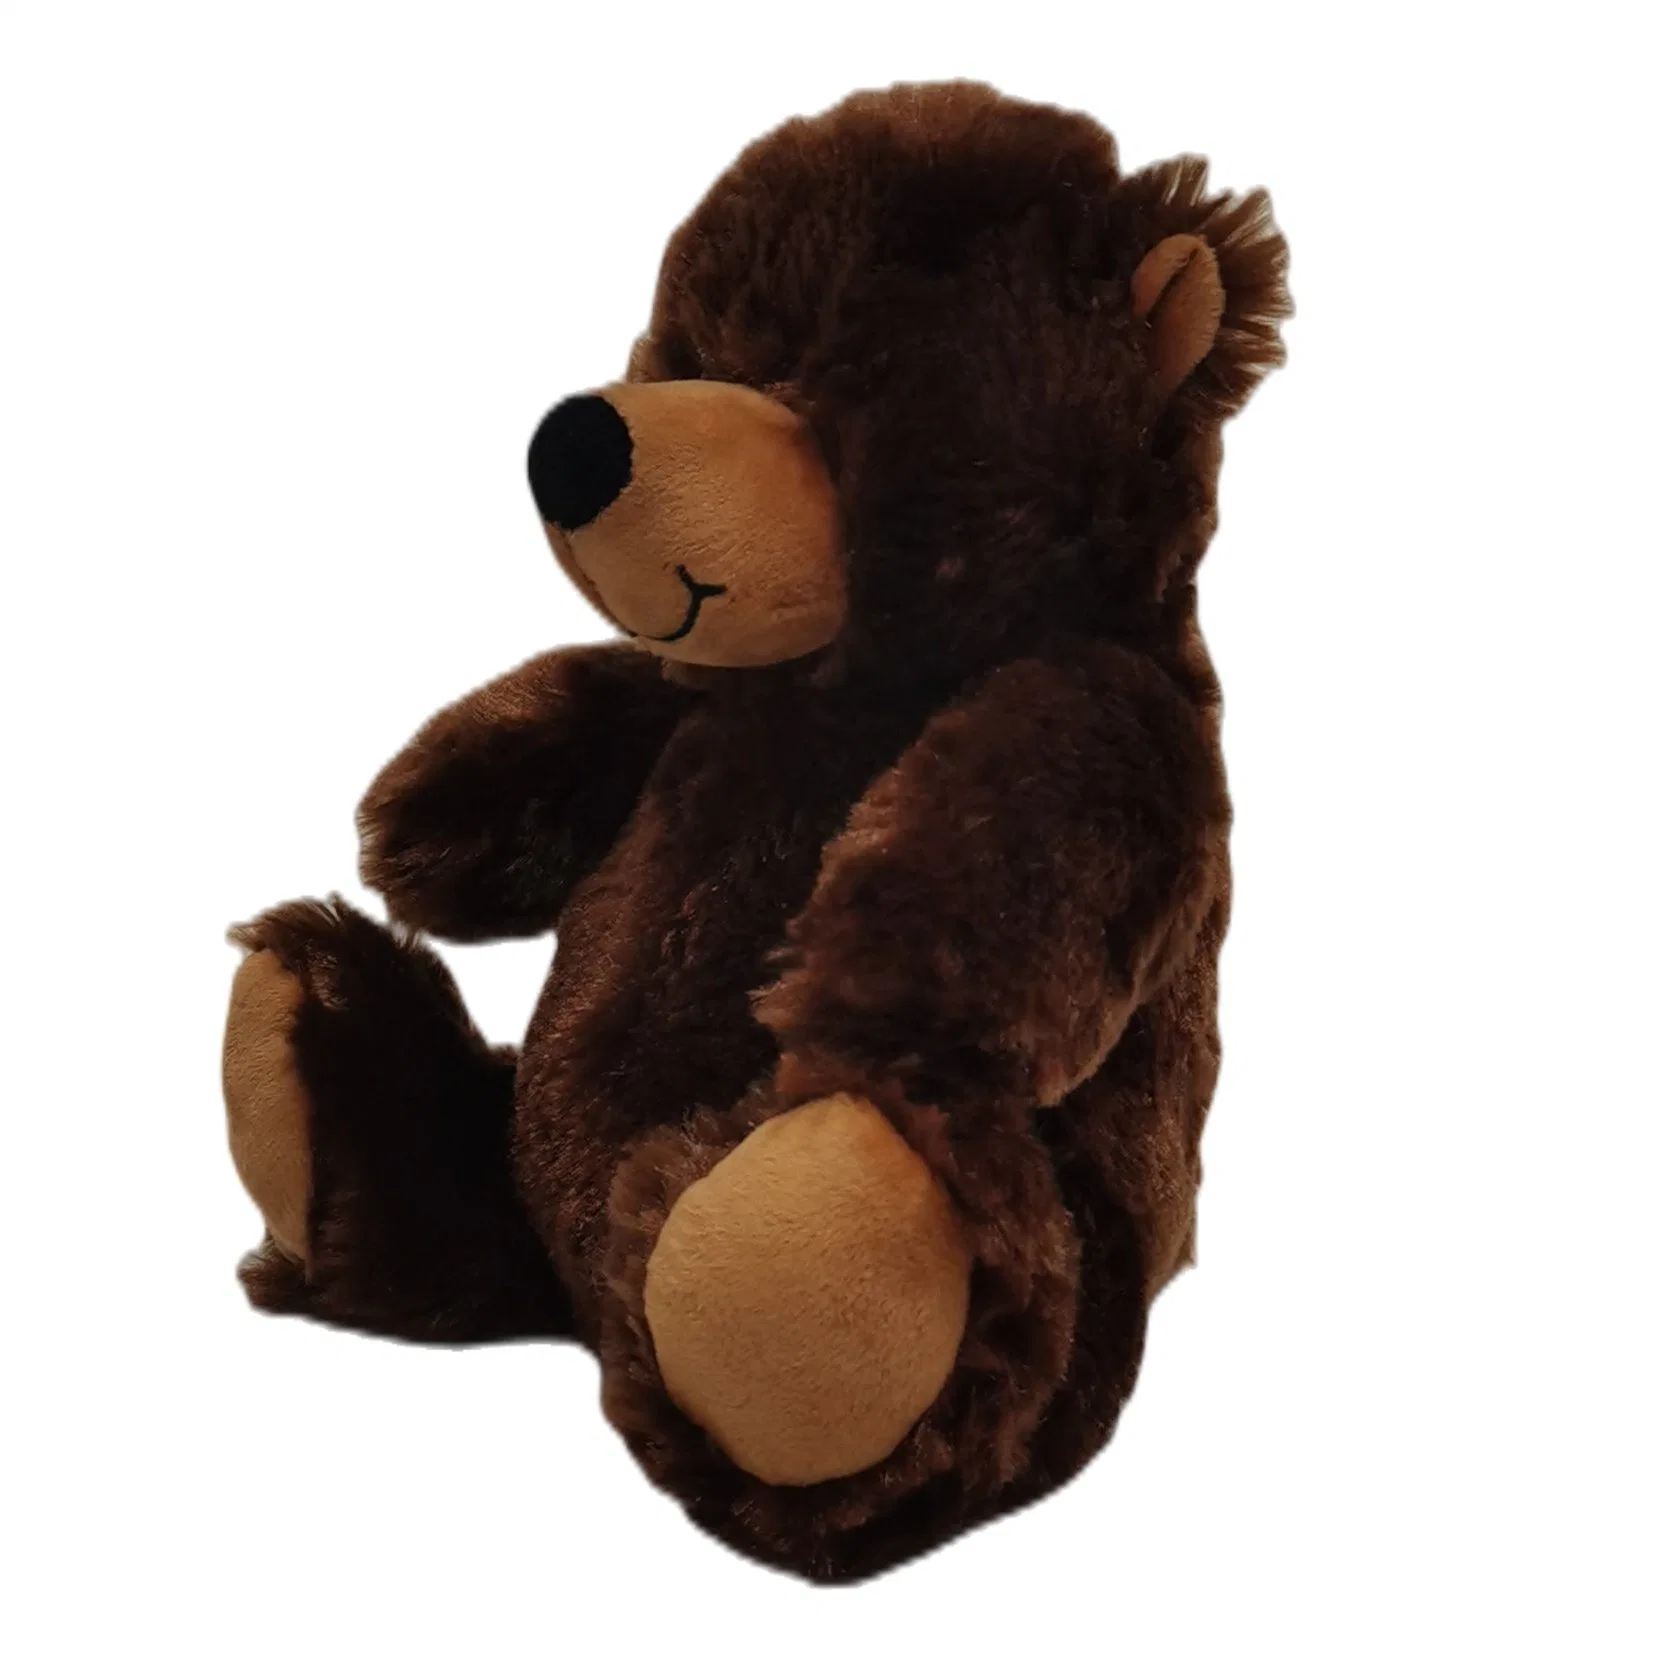 Benutzerdefinierte Ungestopfte Plüsch Spielzeug Skins Dunkelbraun Teddybär Kinder Weiche Kinder Geschenk Tier Bär Haut Baby 20cm DIY Haut